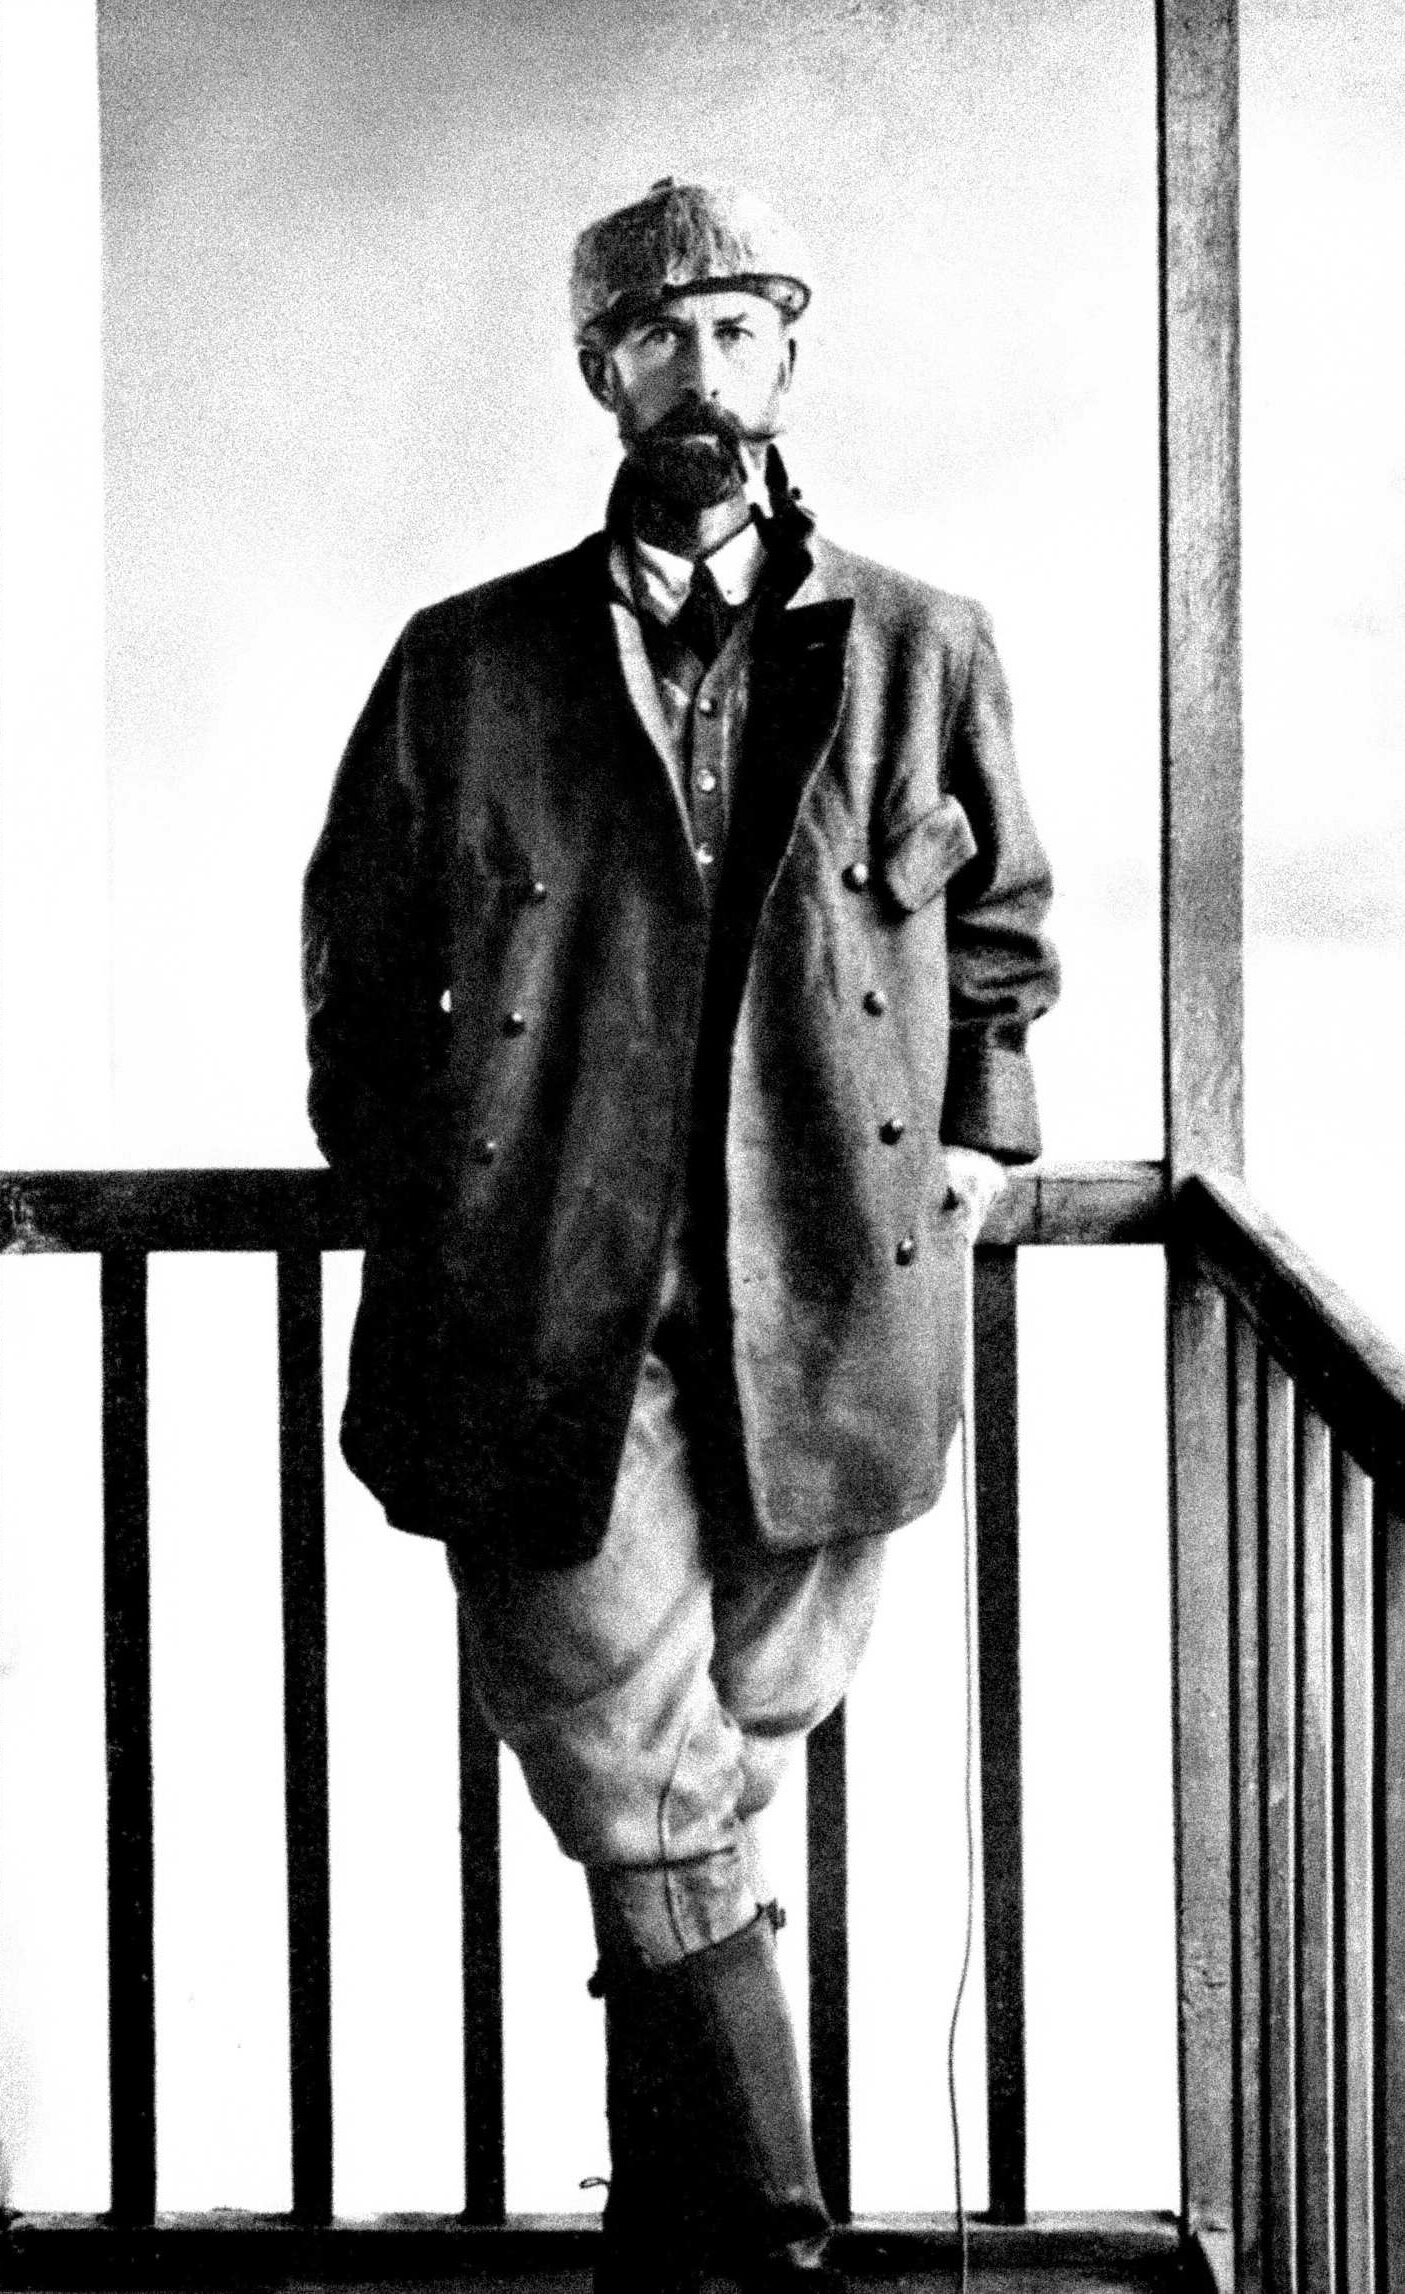 1911 ರಲ್ಲಿ ಲೆಫ್ಟಿನೆಂಟ್-ಕರ್ನಲ್ ಪರ್ಸಿ ಹ್ಯಾರಿಸನ್ ಫಾಸೆಟ್ ಅವರ ಫೋಟೋವನ್ನು ಮರುಸ್ಥಾಪಿಸಲಾಗಿದೆ. ವಿಕಿಮೀಡಿಯಾ ಕಾಮನ್ಸ್.